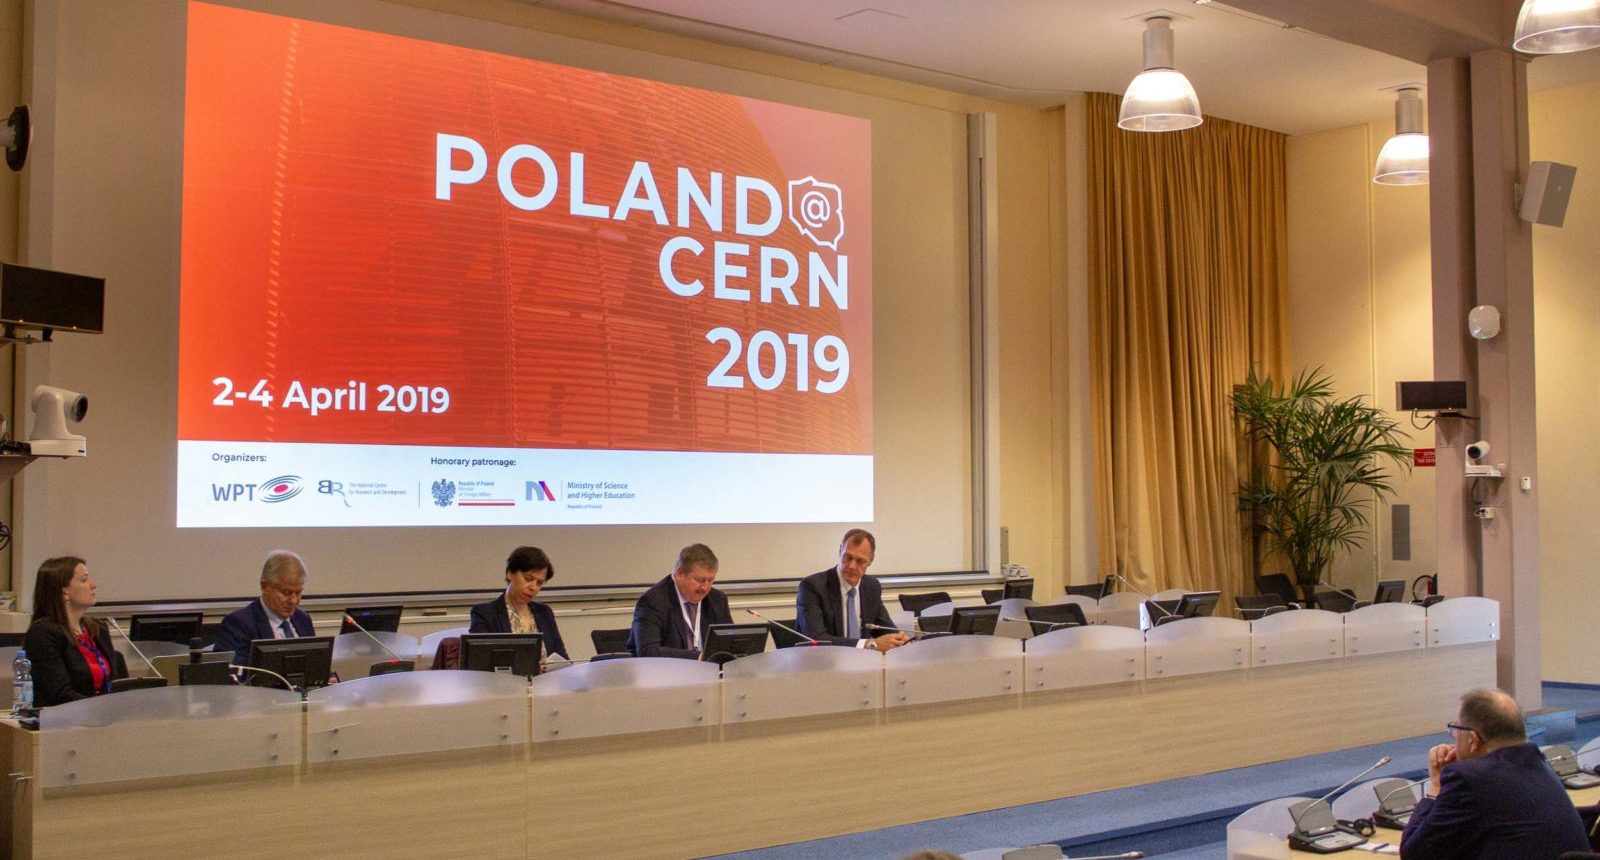 Dziękujemy za udział w Poland@CERN 2019!